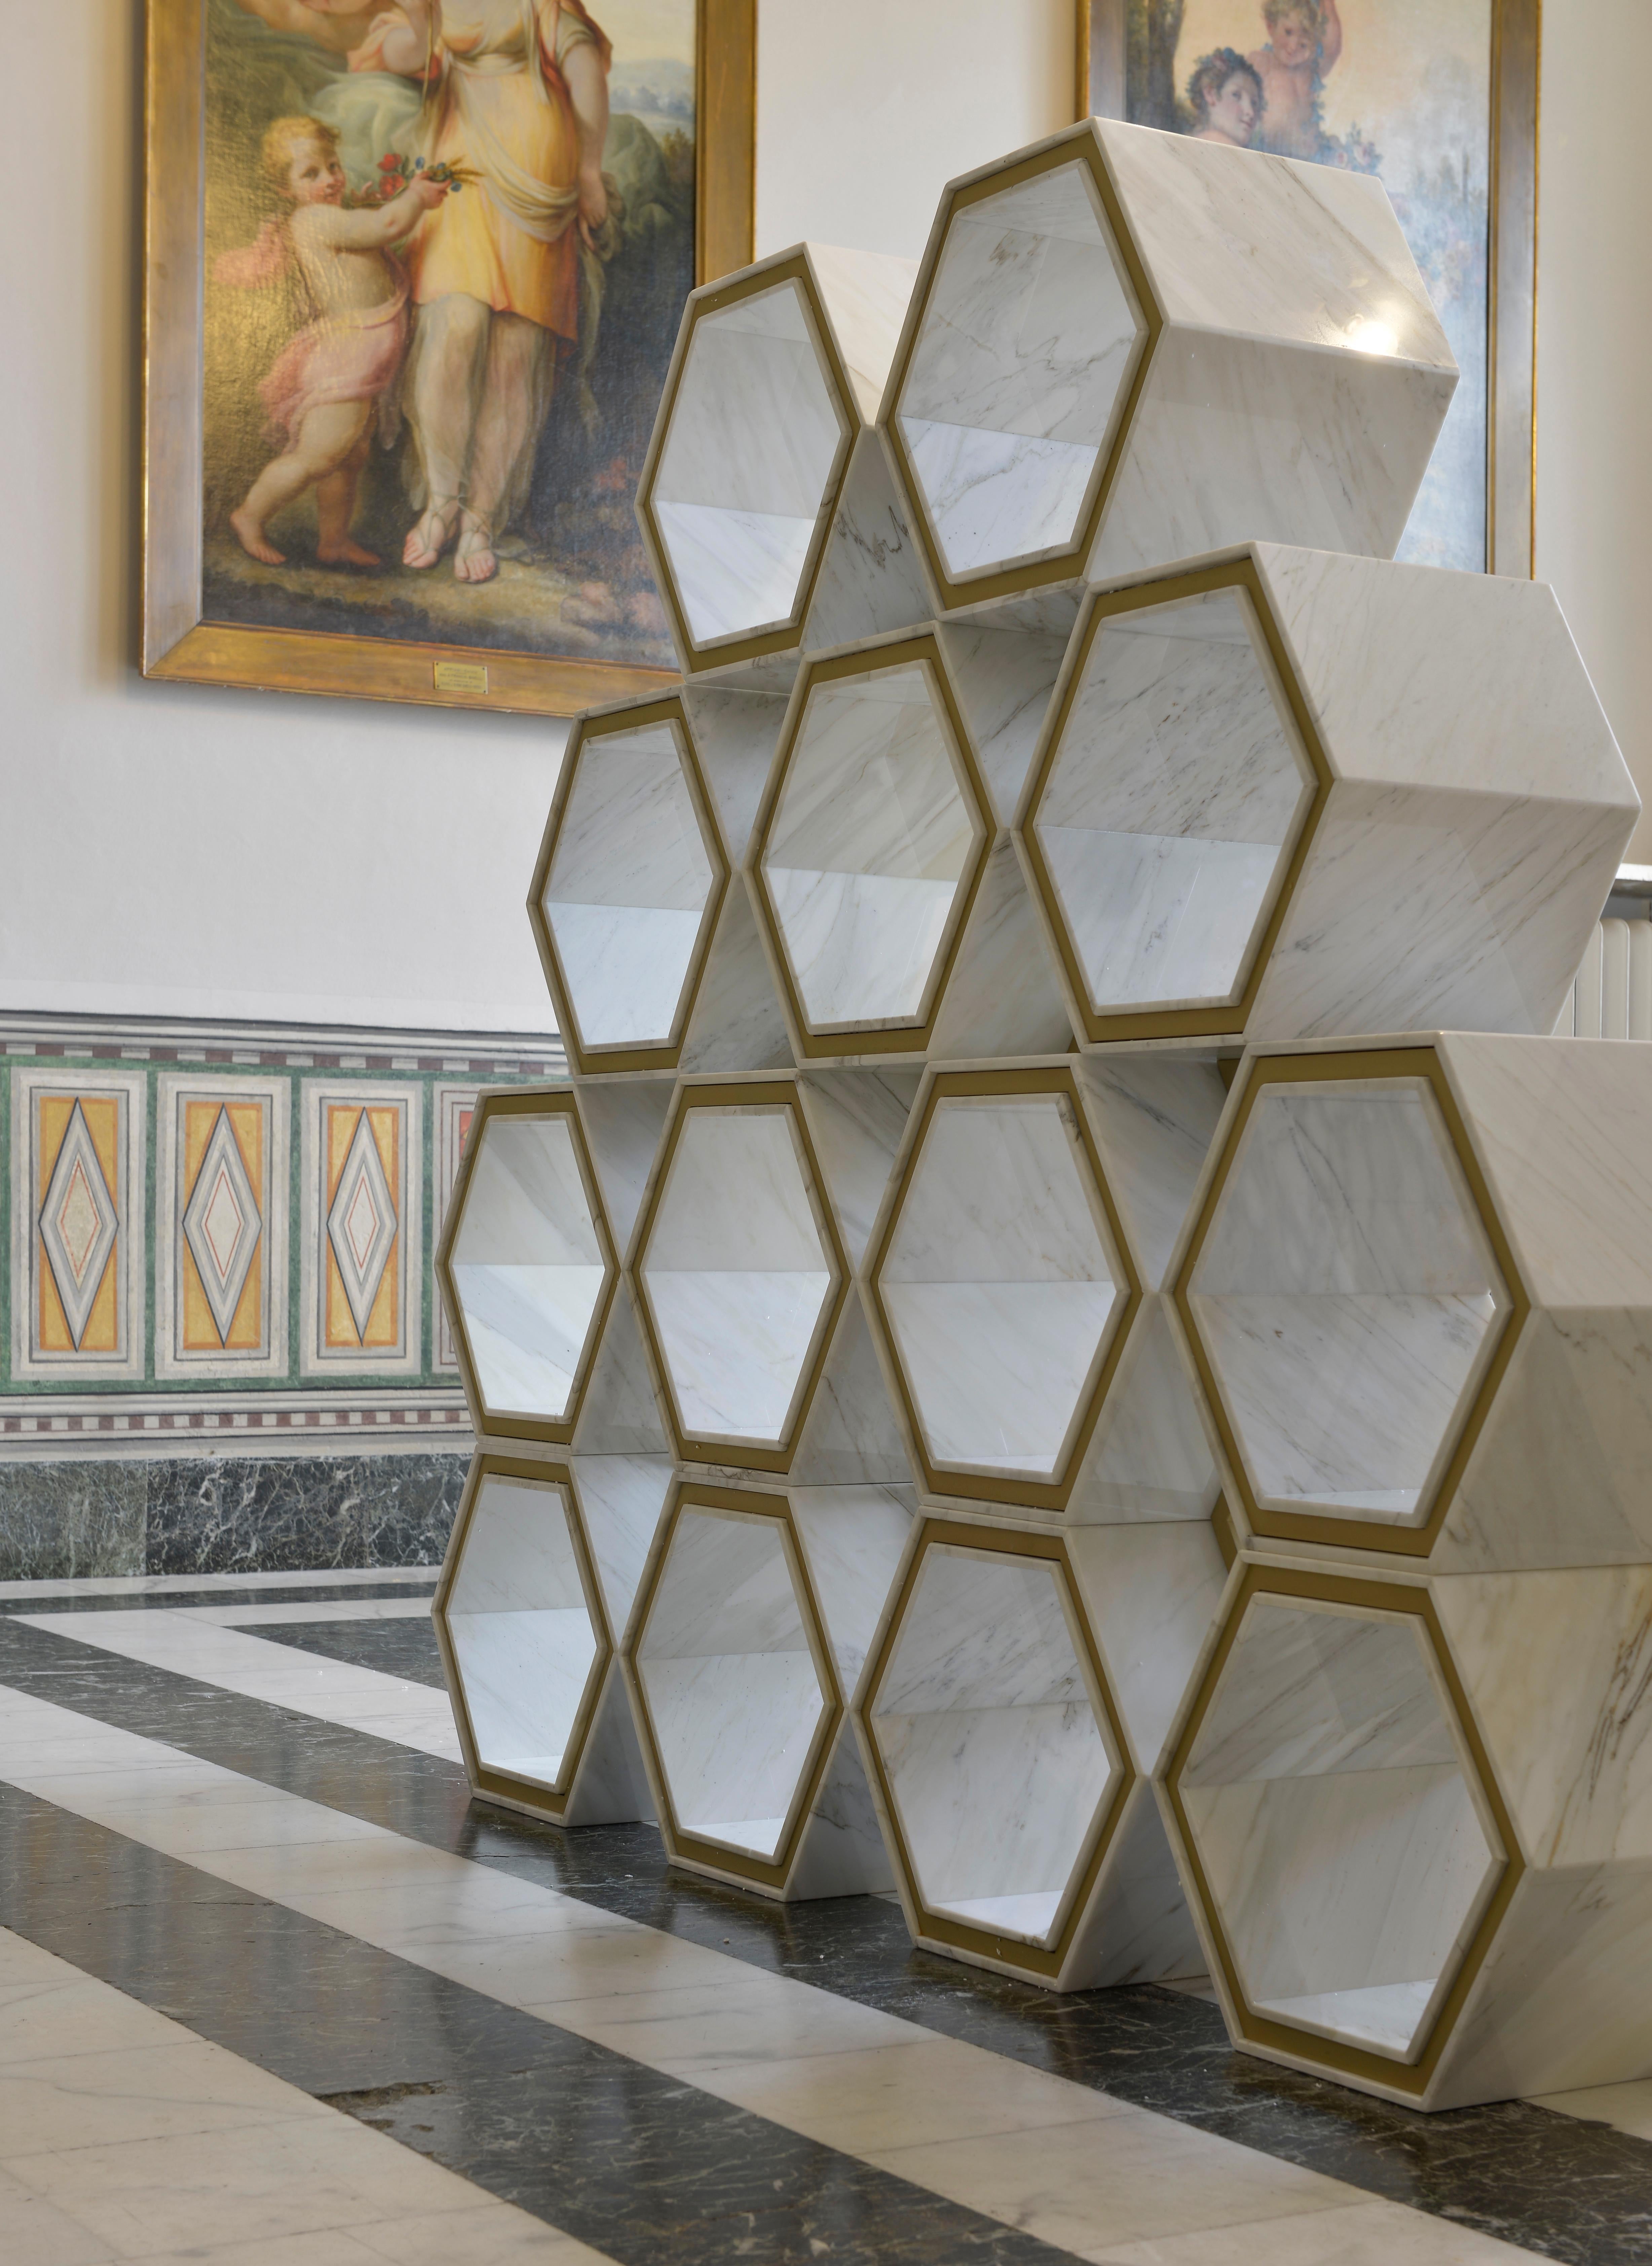 L'une des innombrables façons dont la bibliothèque hexagonale peut être utilisée pour structurer élégamment l'espace et accueillir des objets. Cette élégante bibliothèque de forme hexagonale est une combinaison de métal doré et de marbre qui dégage